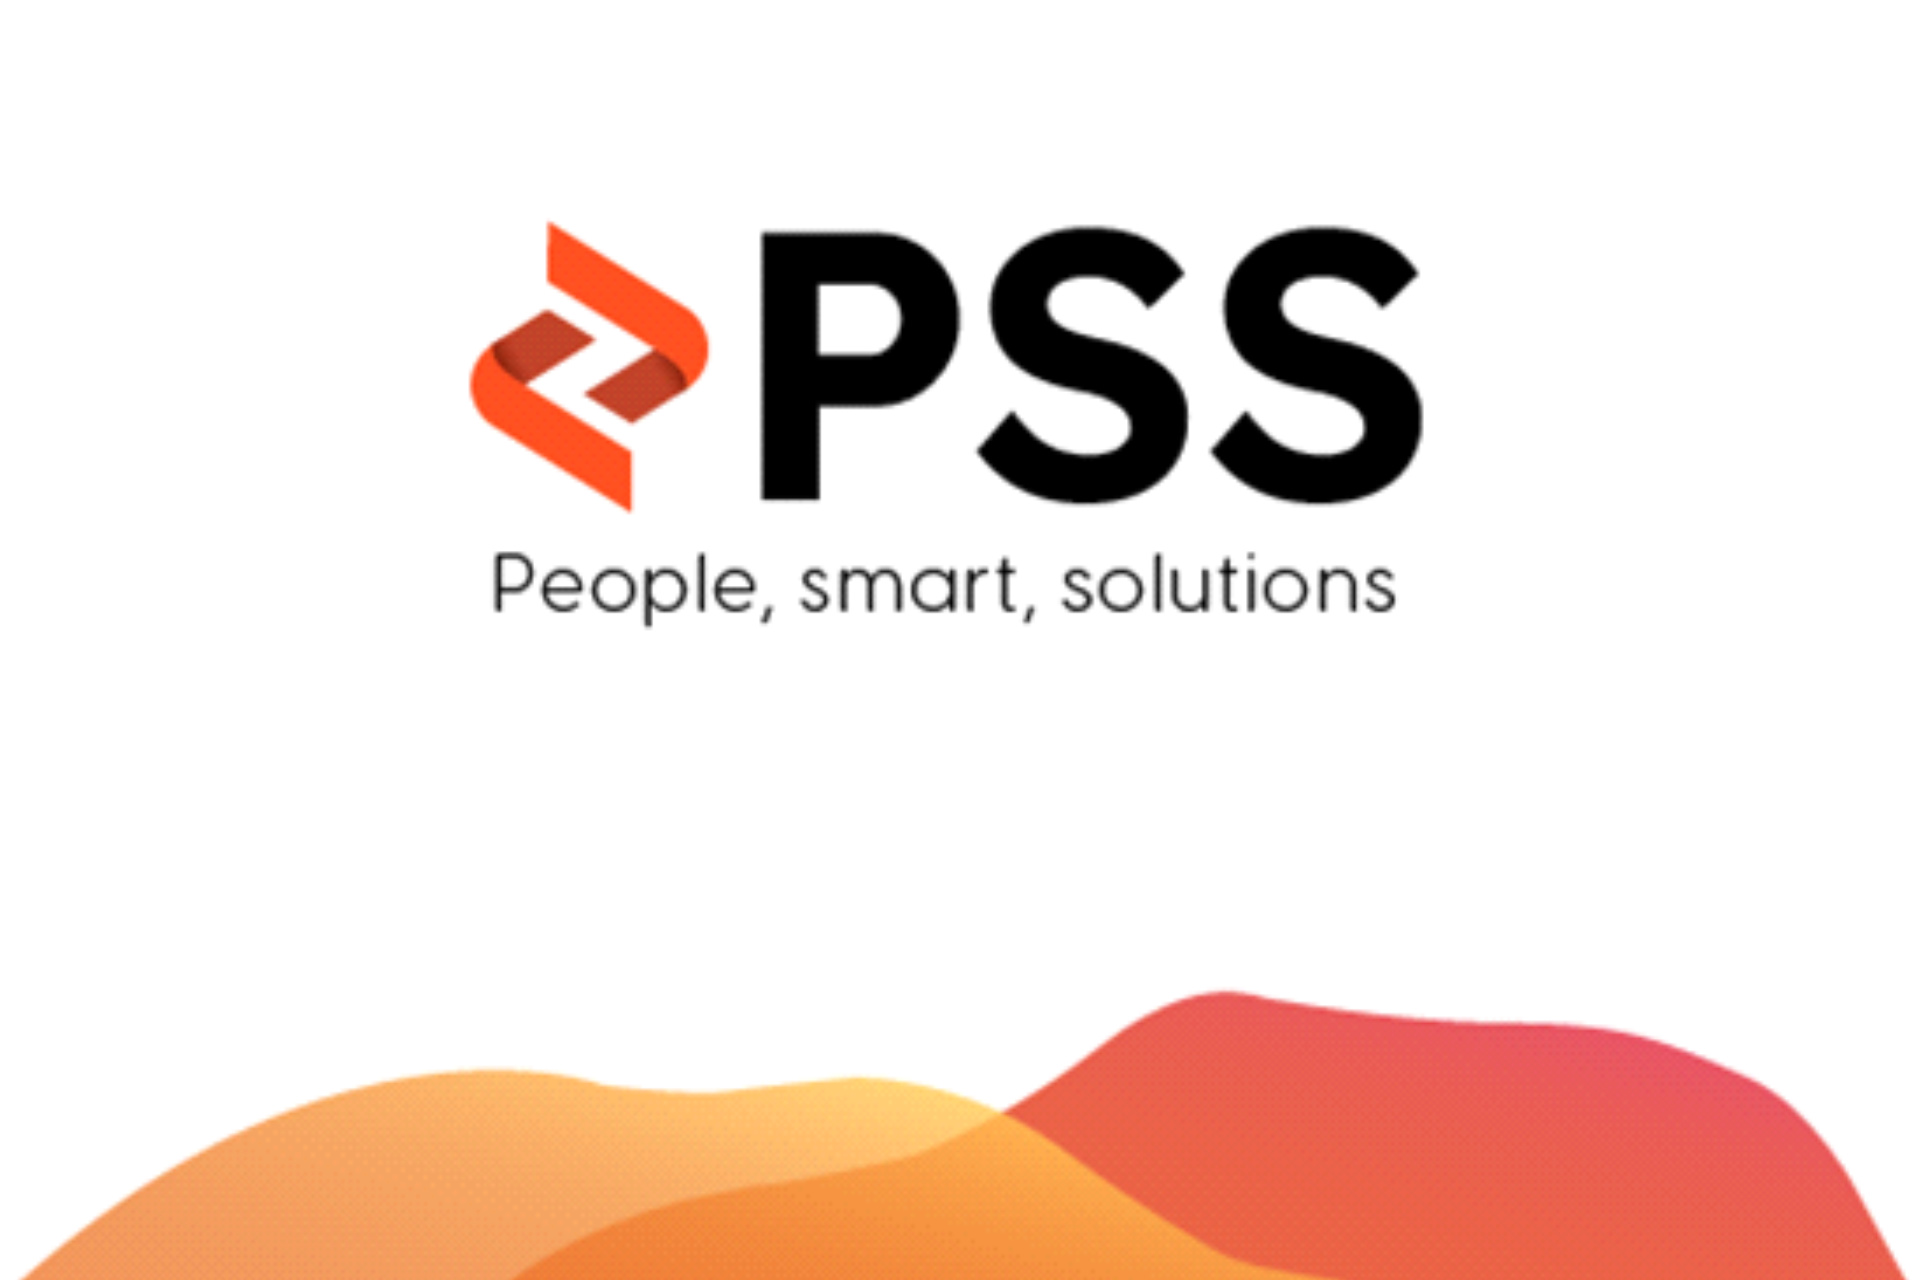 Nueva imagen de marca de PSS